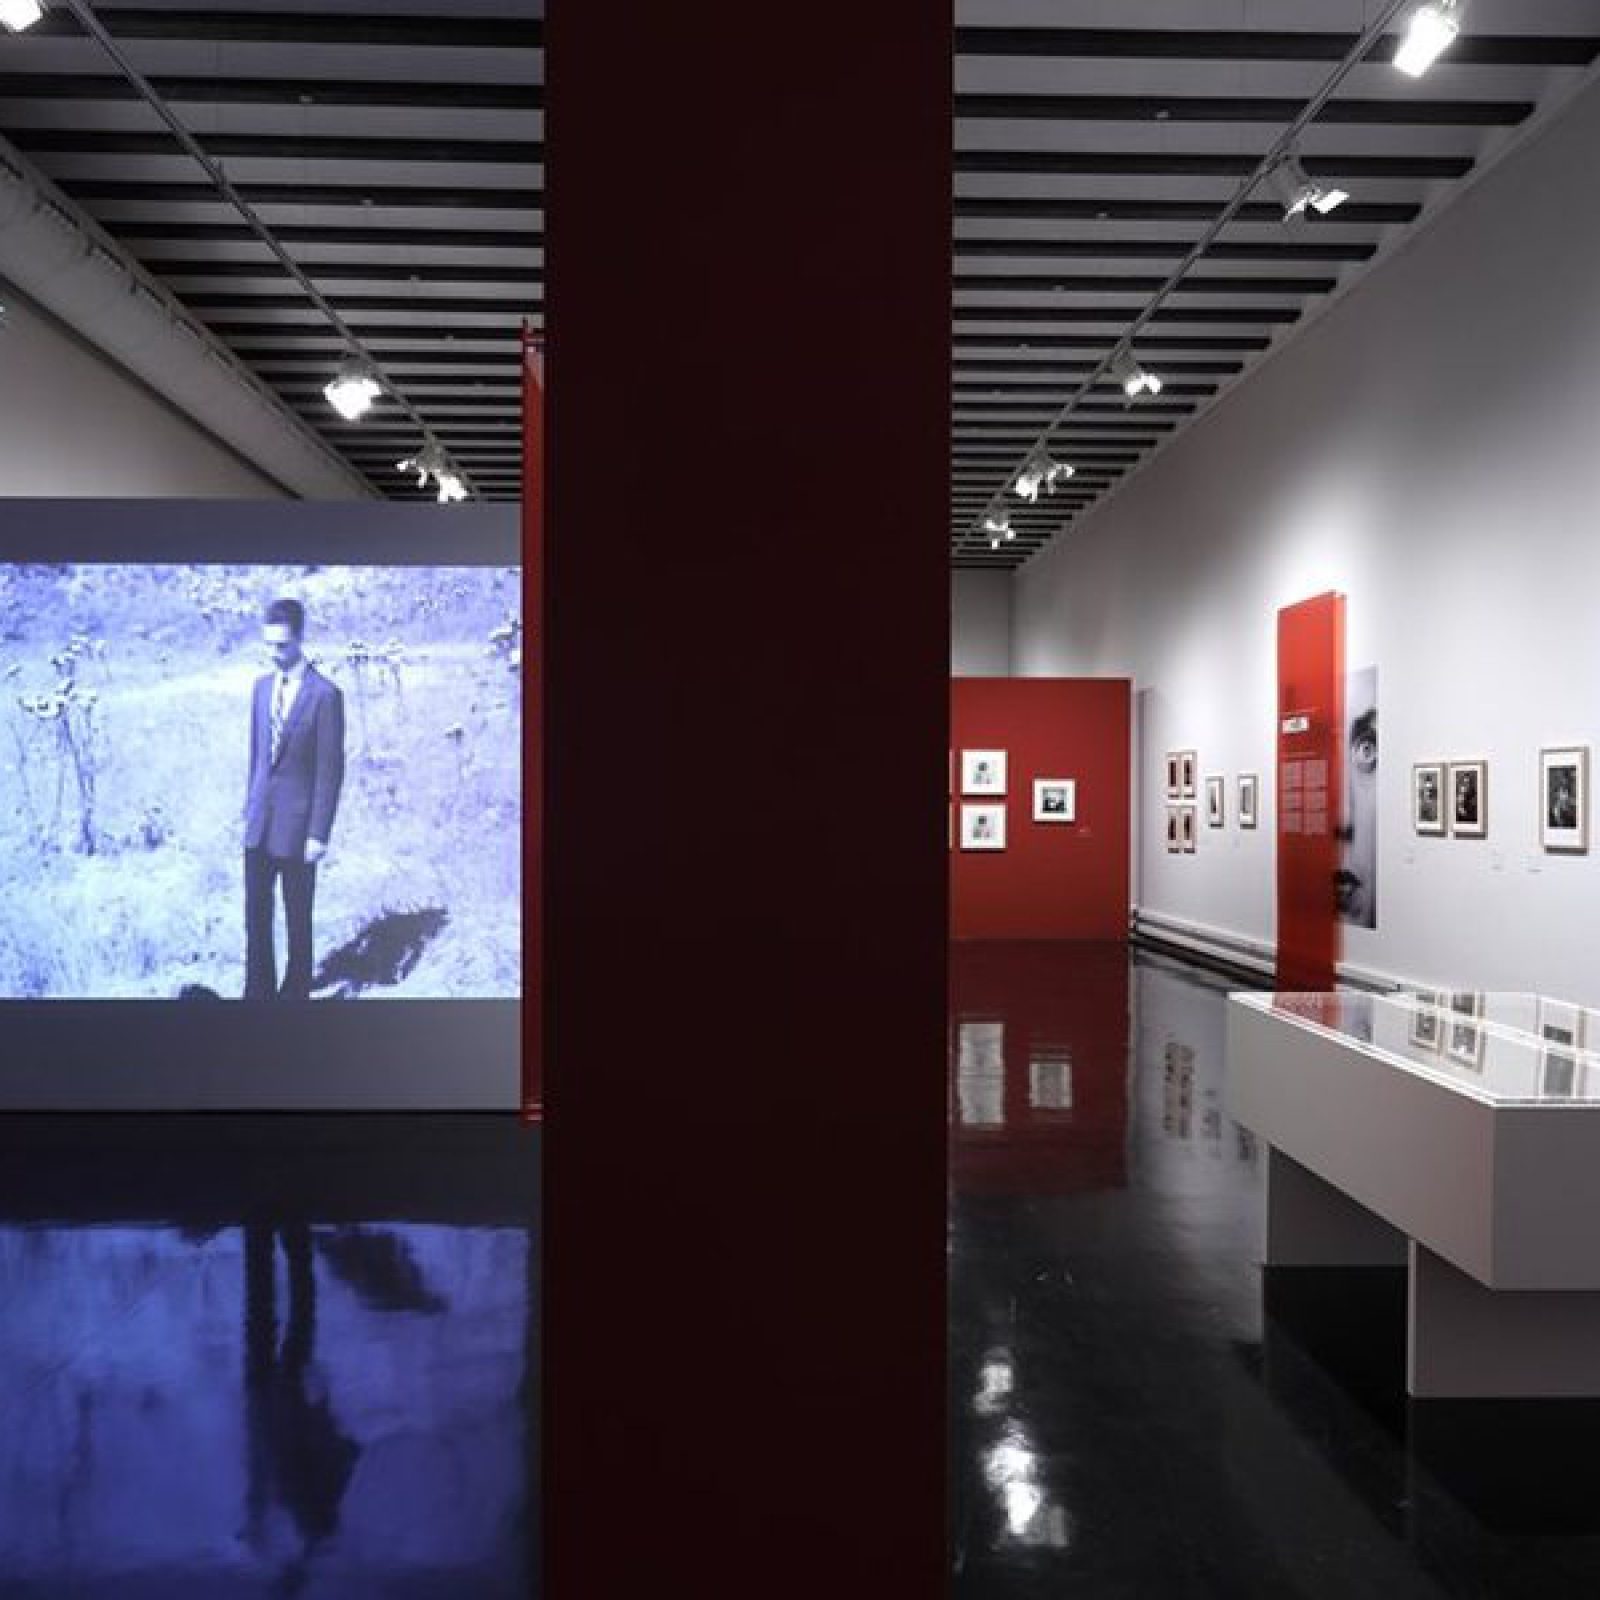 Vista de la exposición 'Humberto Rivas 1937-2009' en Centre Cultural La Nau, Valencia, España. Foto cortesía del Centre Cultural La Nau